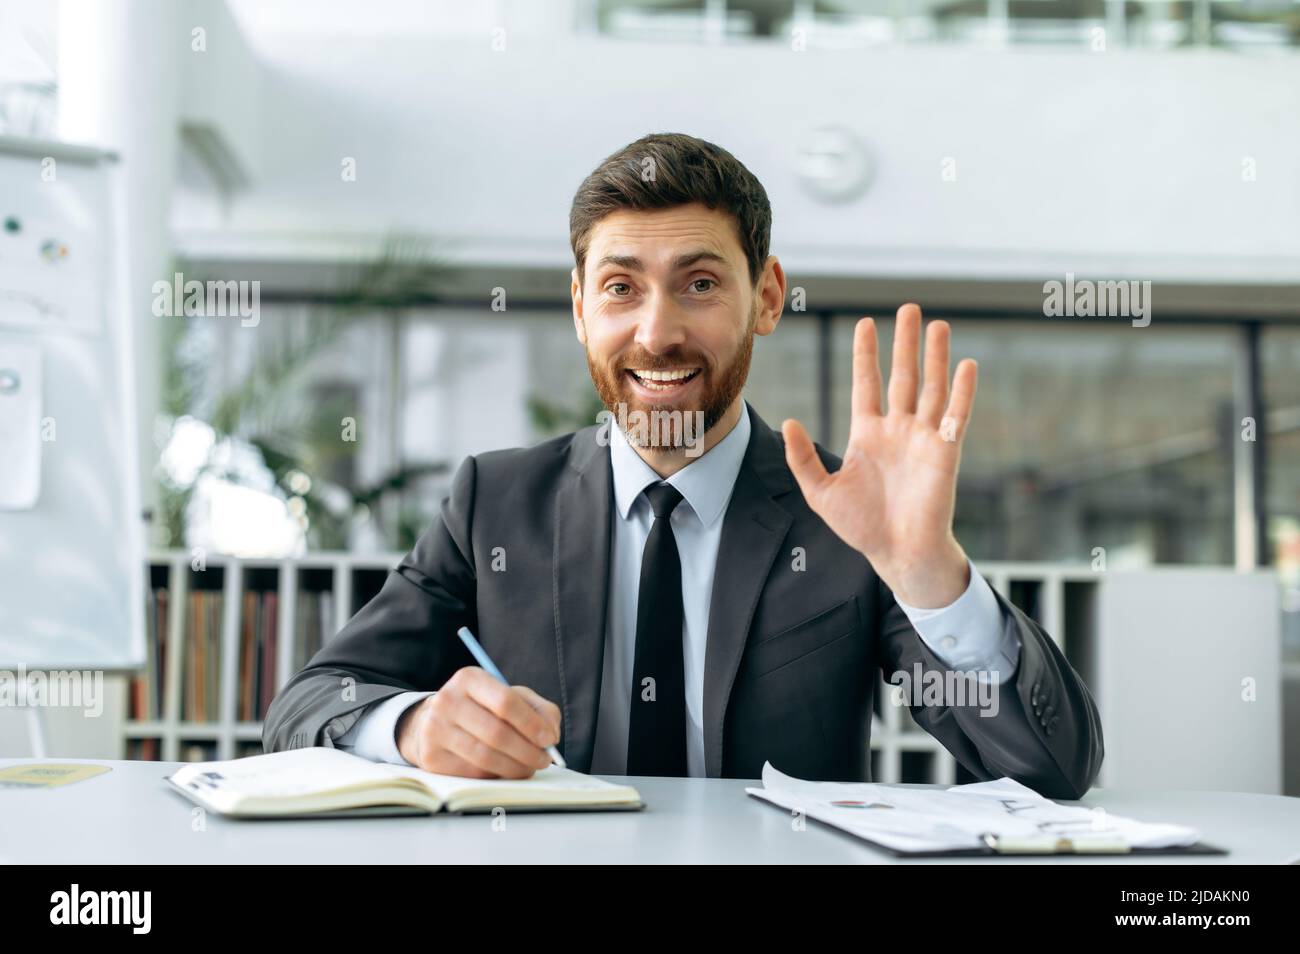 Ambizioso uomo d'affari caucasico positivo, manager aziendale, supervisore, si siede in ufficio moderno, in abiti da lavoro, tenendo un video incontro online con i colleghi, agitando la mano nel saluto, sorride Foto Stock